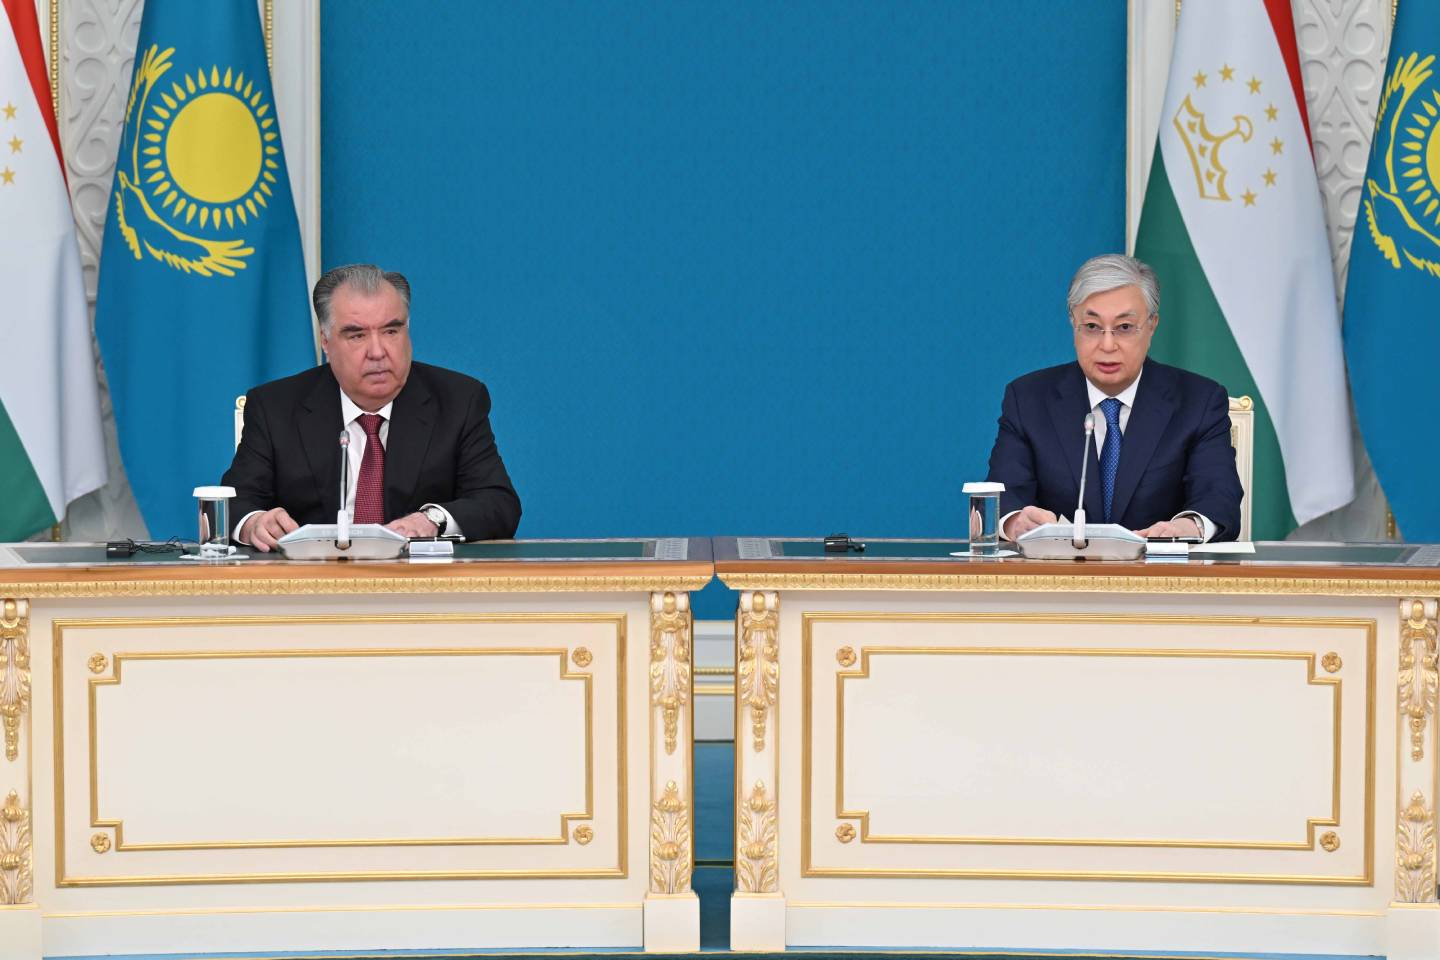 Новости мира / Политика в мире / Президент Казахстана примет участие в предстоящем саммите лидеров стран ЦА